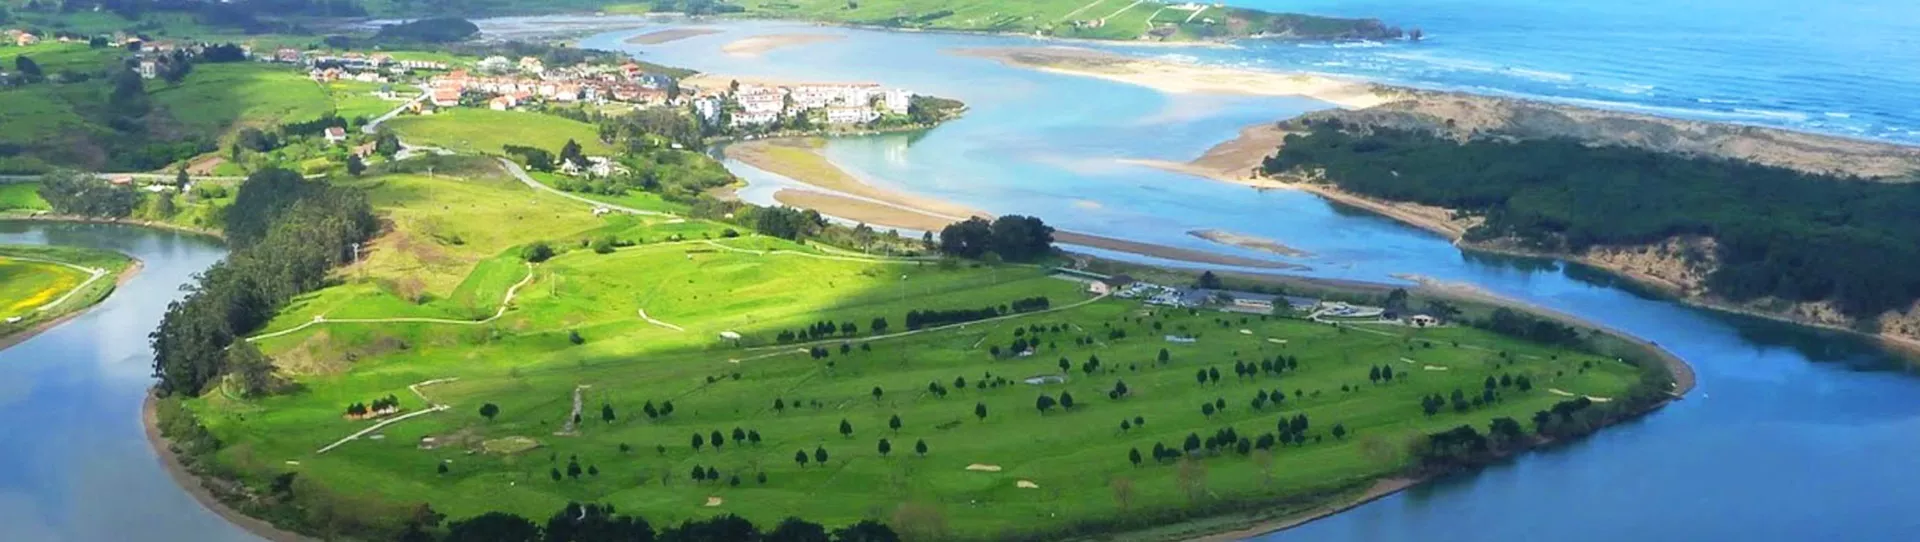 Spain golf courses - Abra del Pas Golf Course - Photo 2